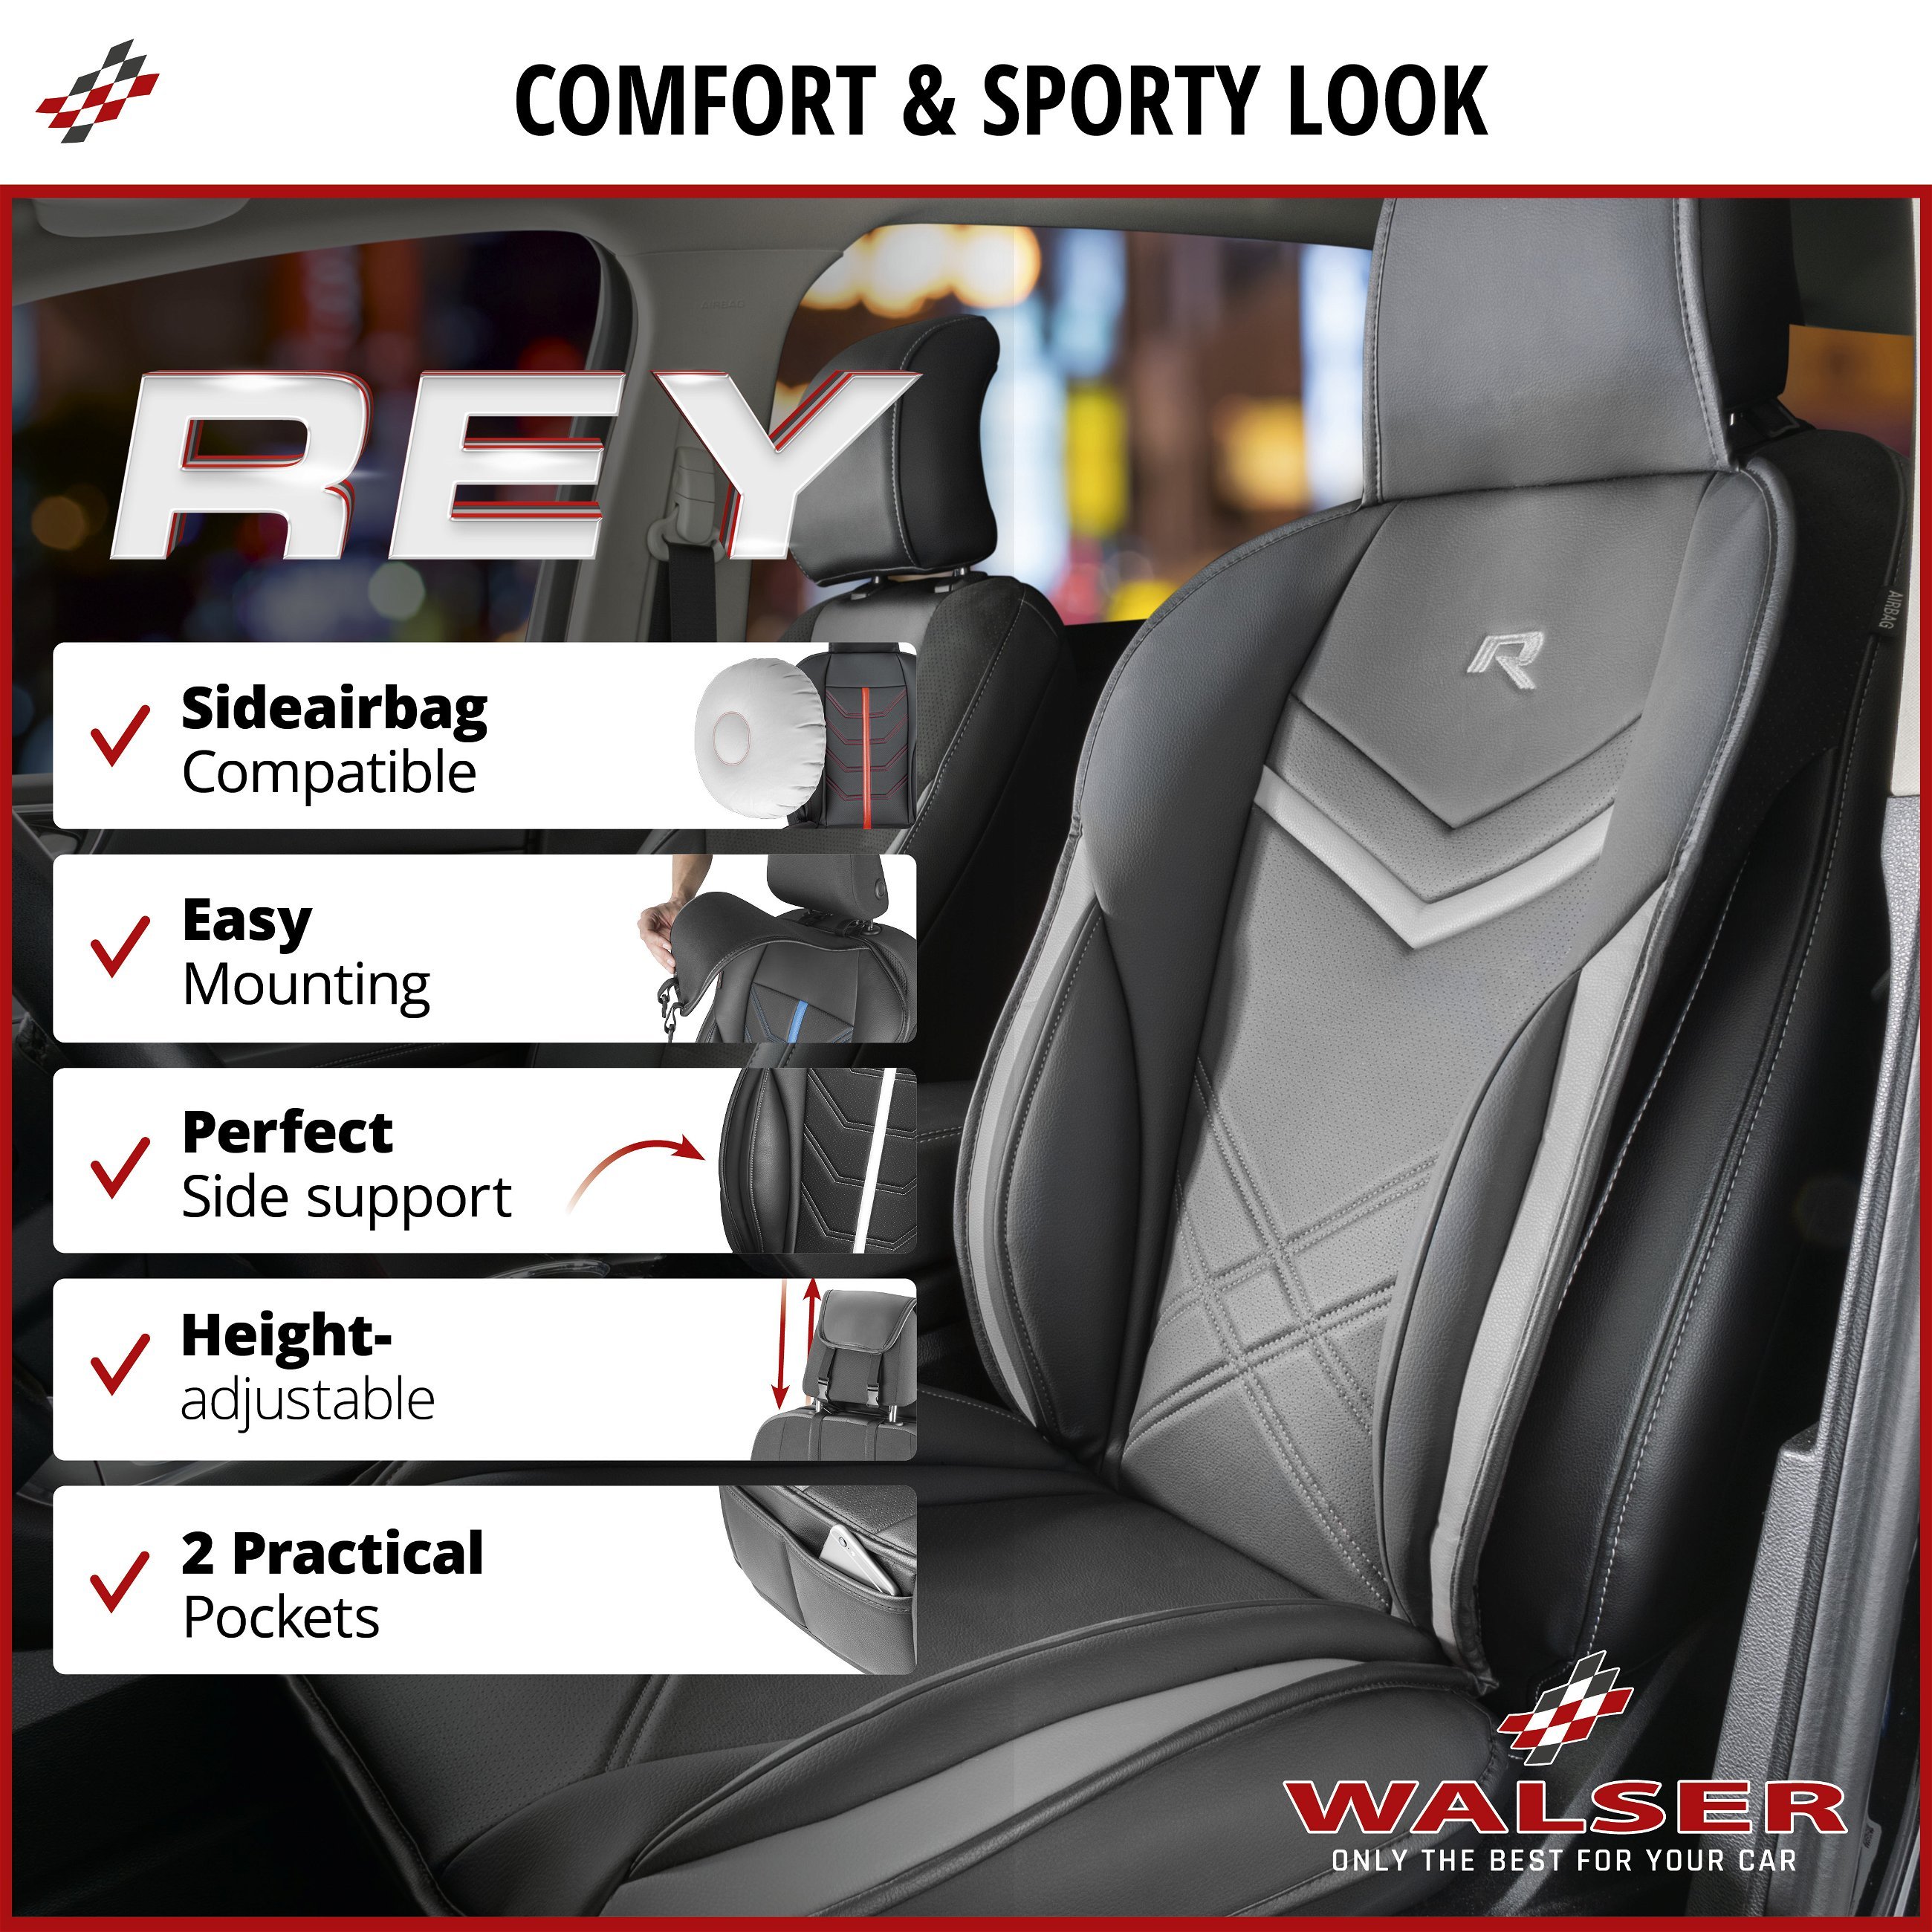 Rey car seat cushion in black-grey